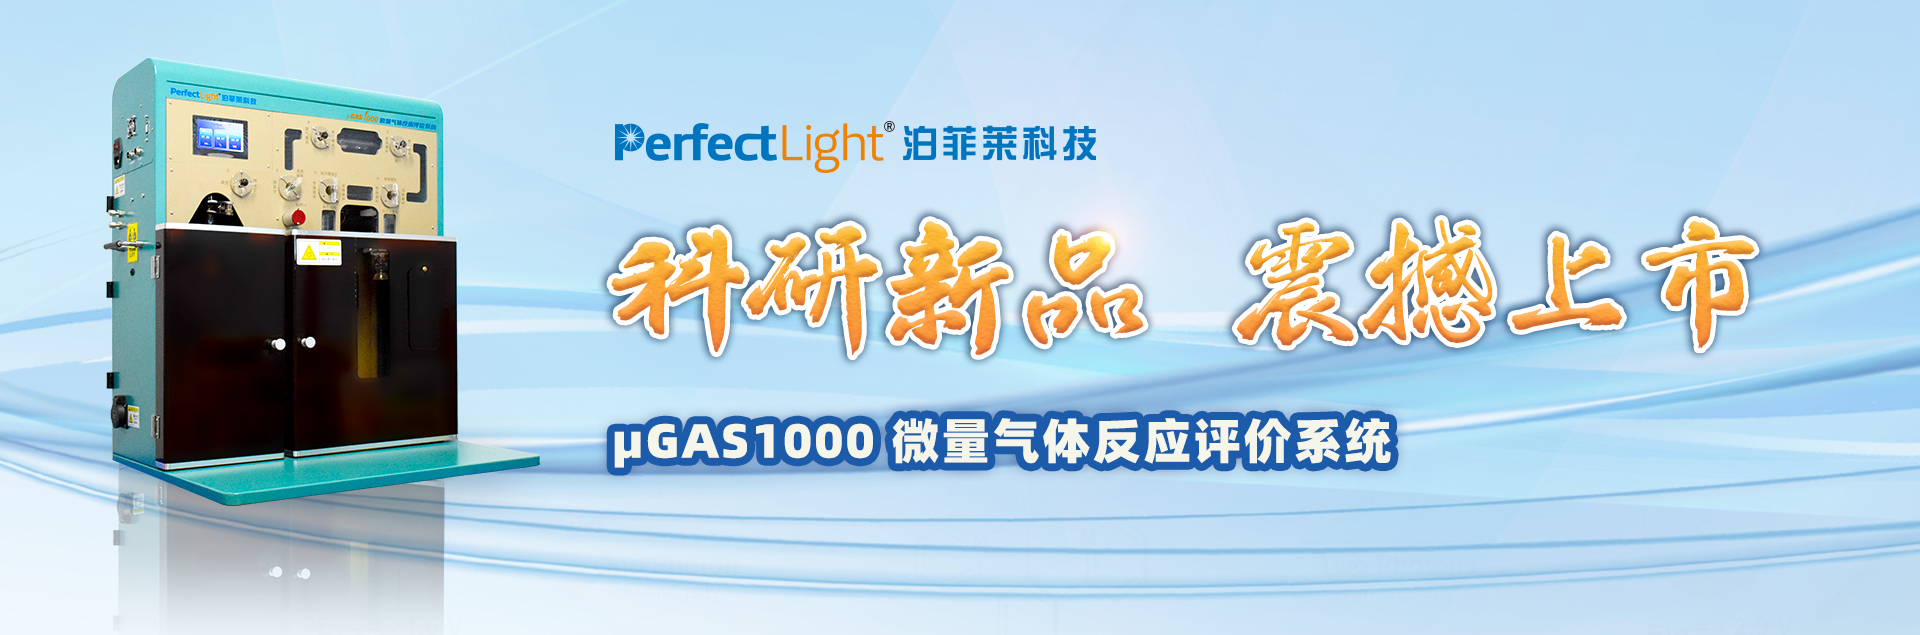 μGAS1000微量气体反应评价系统新品上市